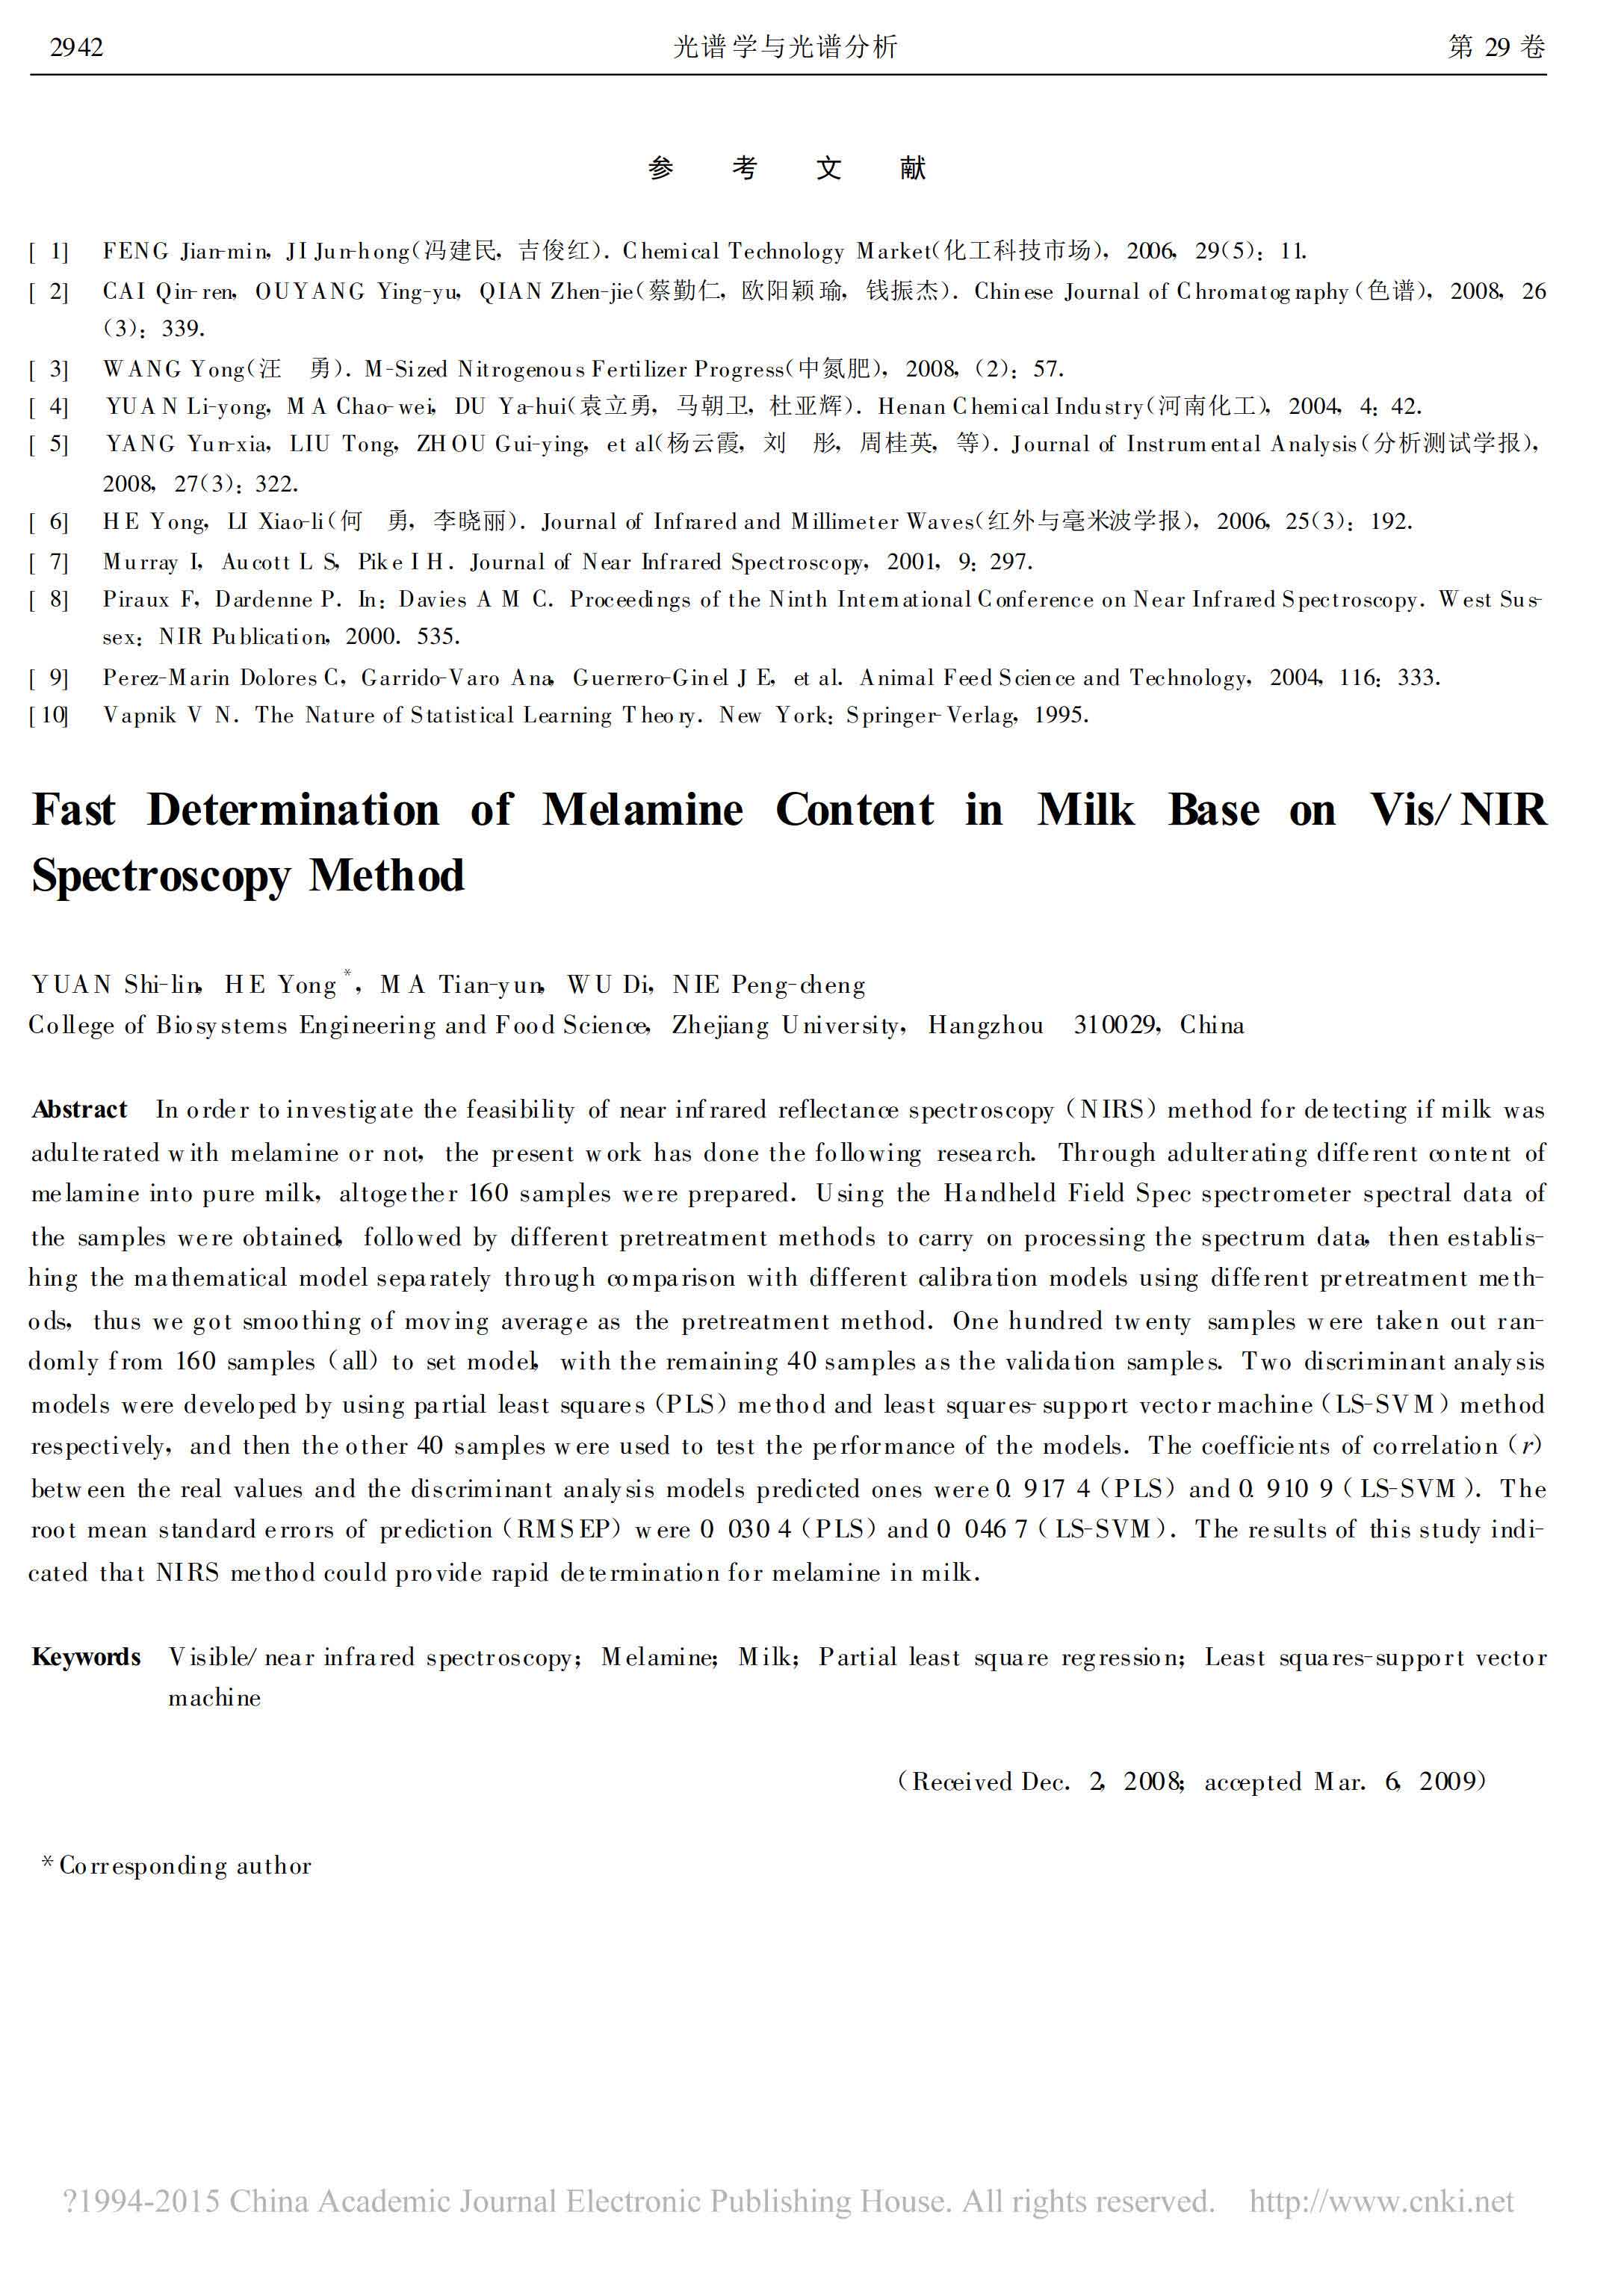 牛奶中三聚氰胺的可见/近红外光谱快速判别分析方法的研究